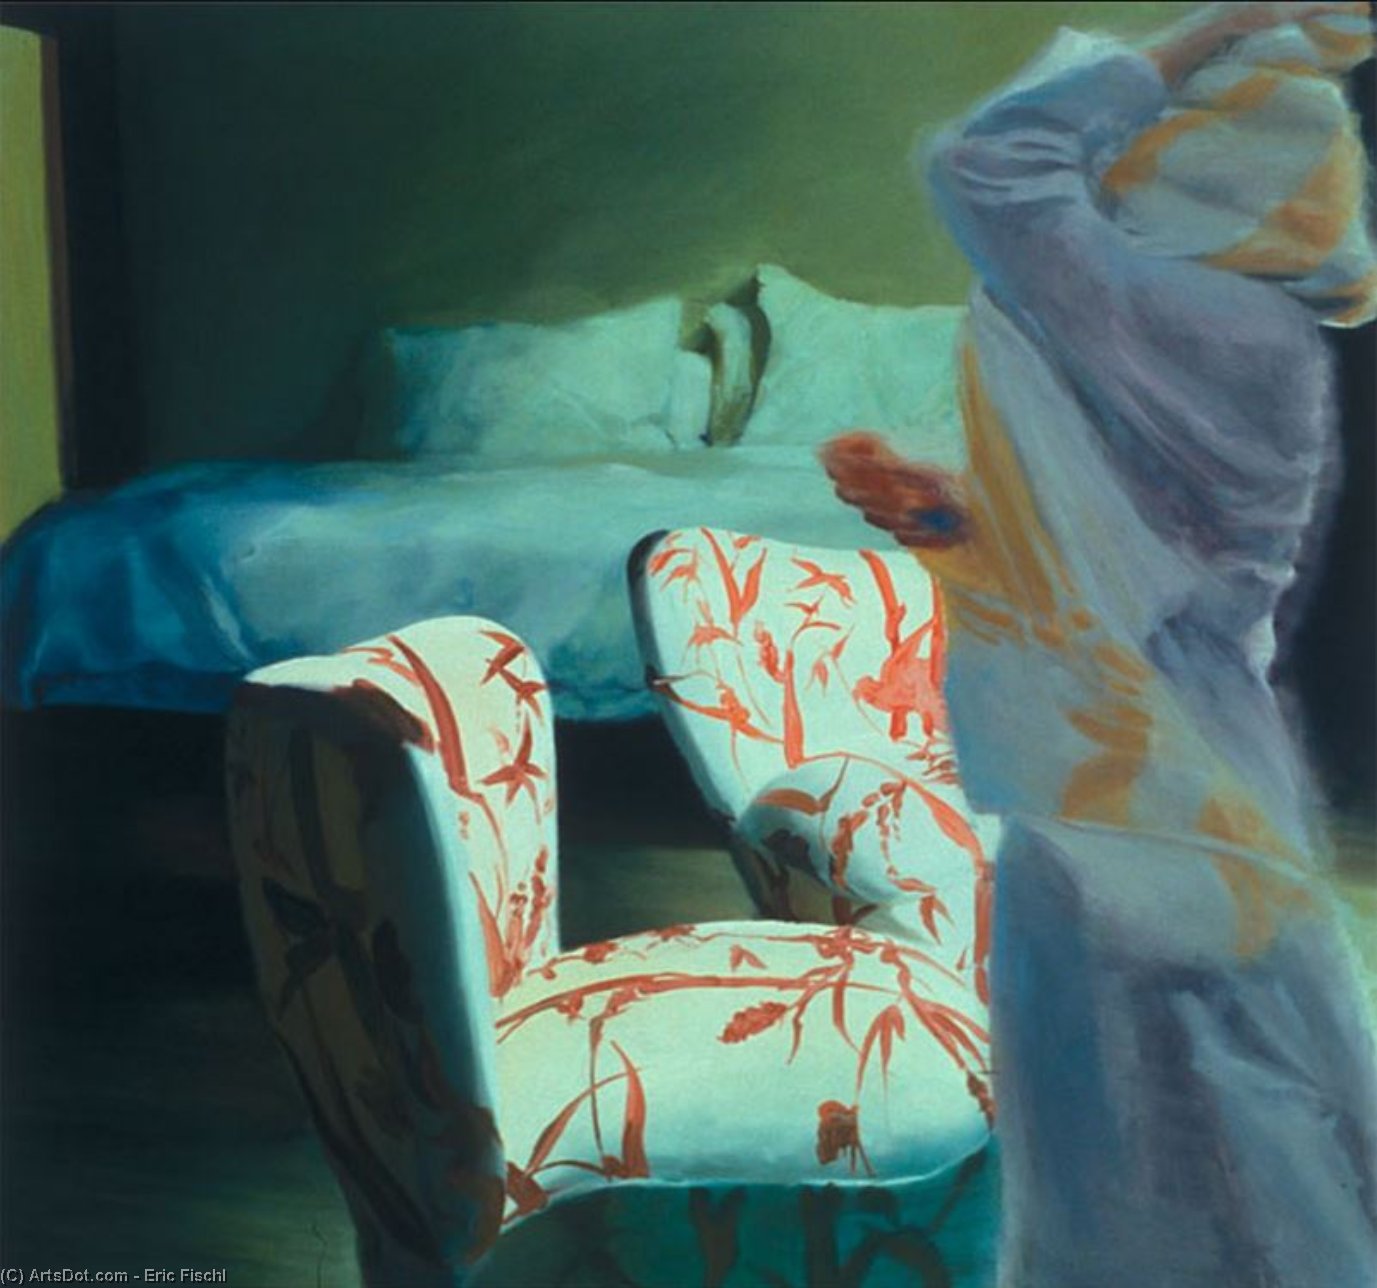 WikiOO.org - אנציקלופדיה לאמנויות יפות - ציור, יצירות אמנות Eric Fischl - The Bed, the Chair, Crossing